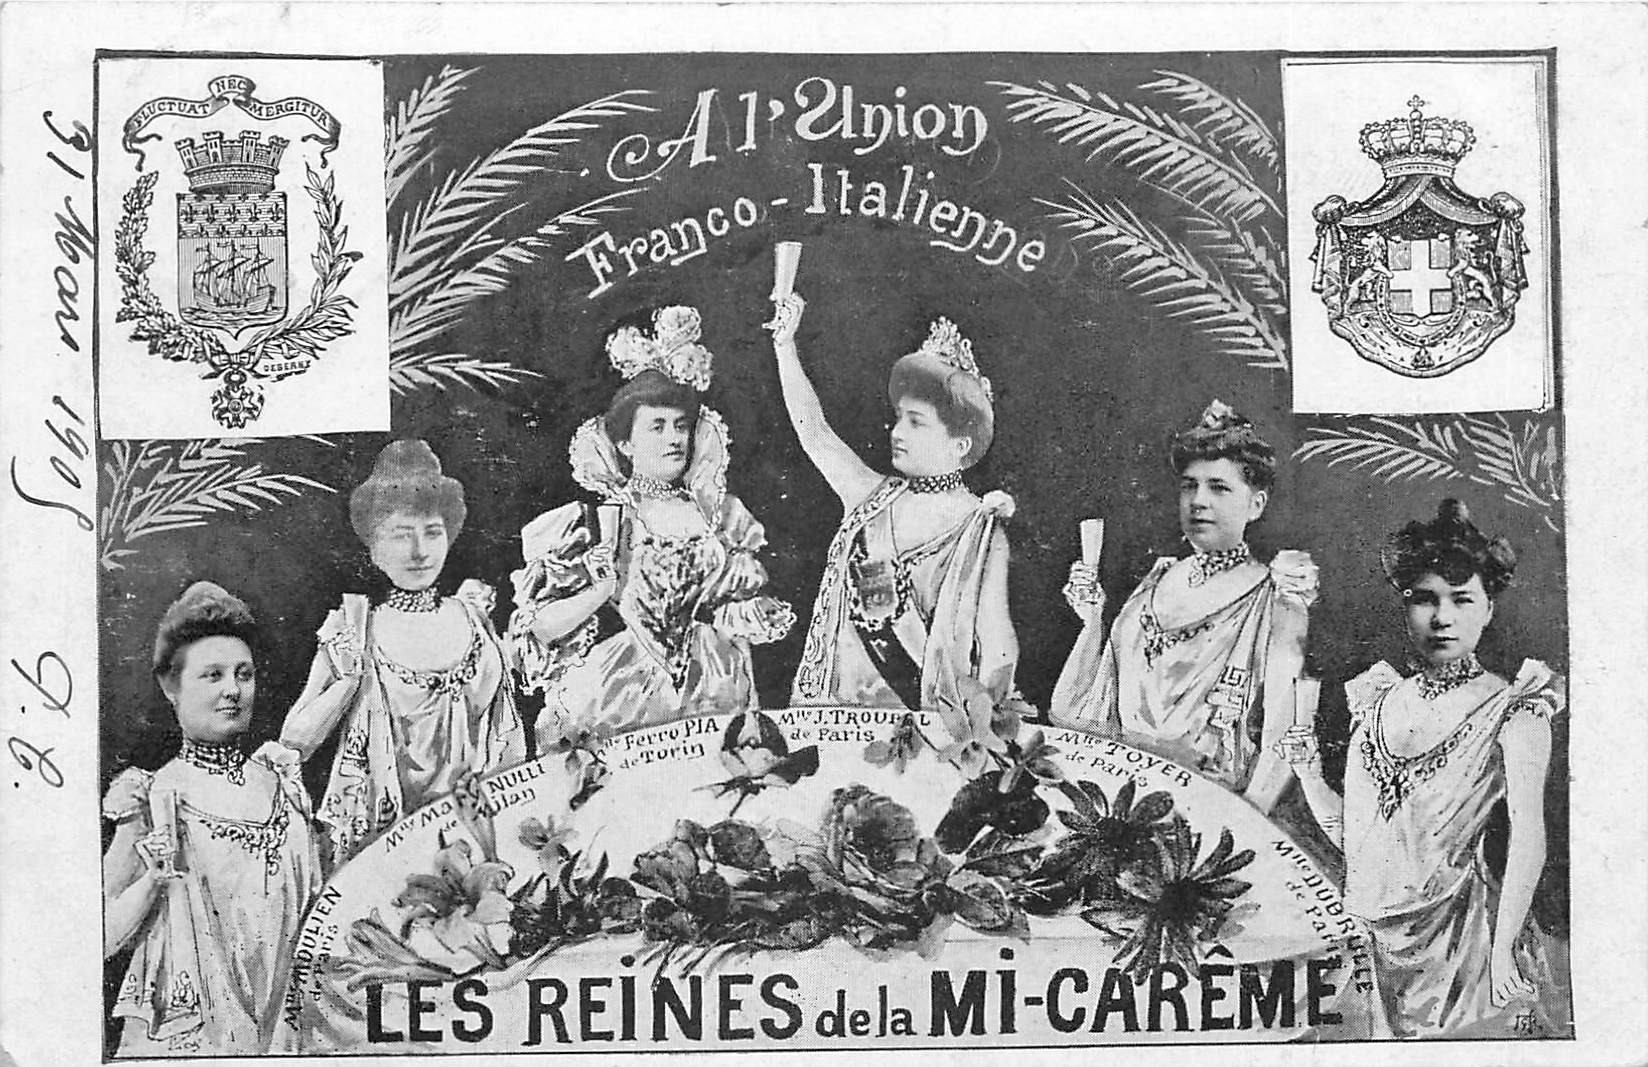 Les Reines de la mi-carême à l'Union Franco-Italienne 1905